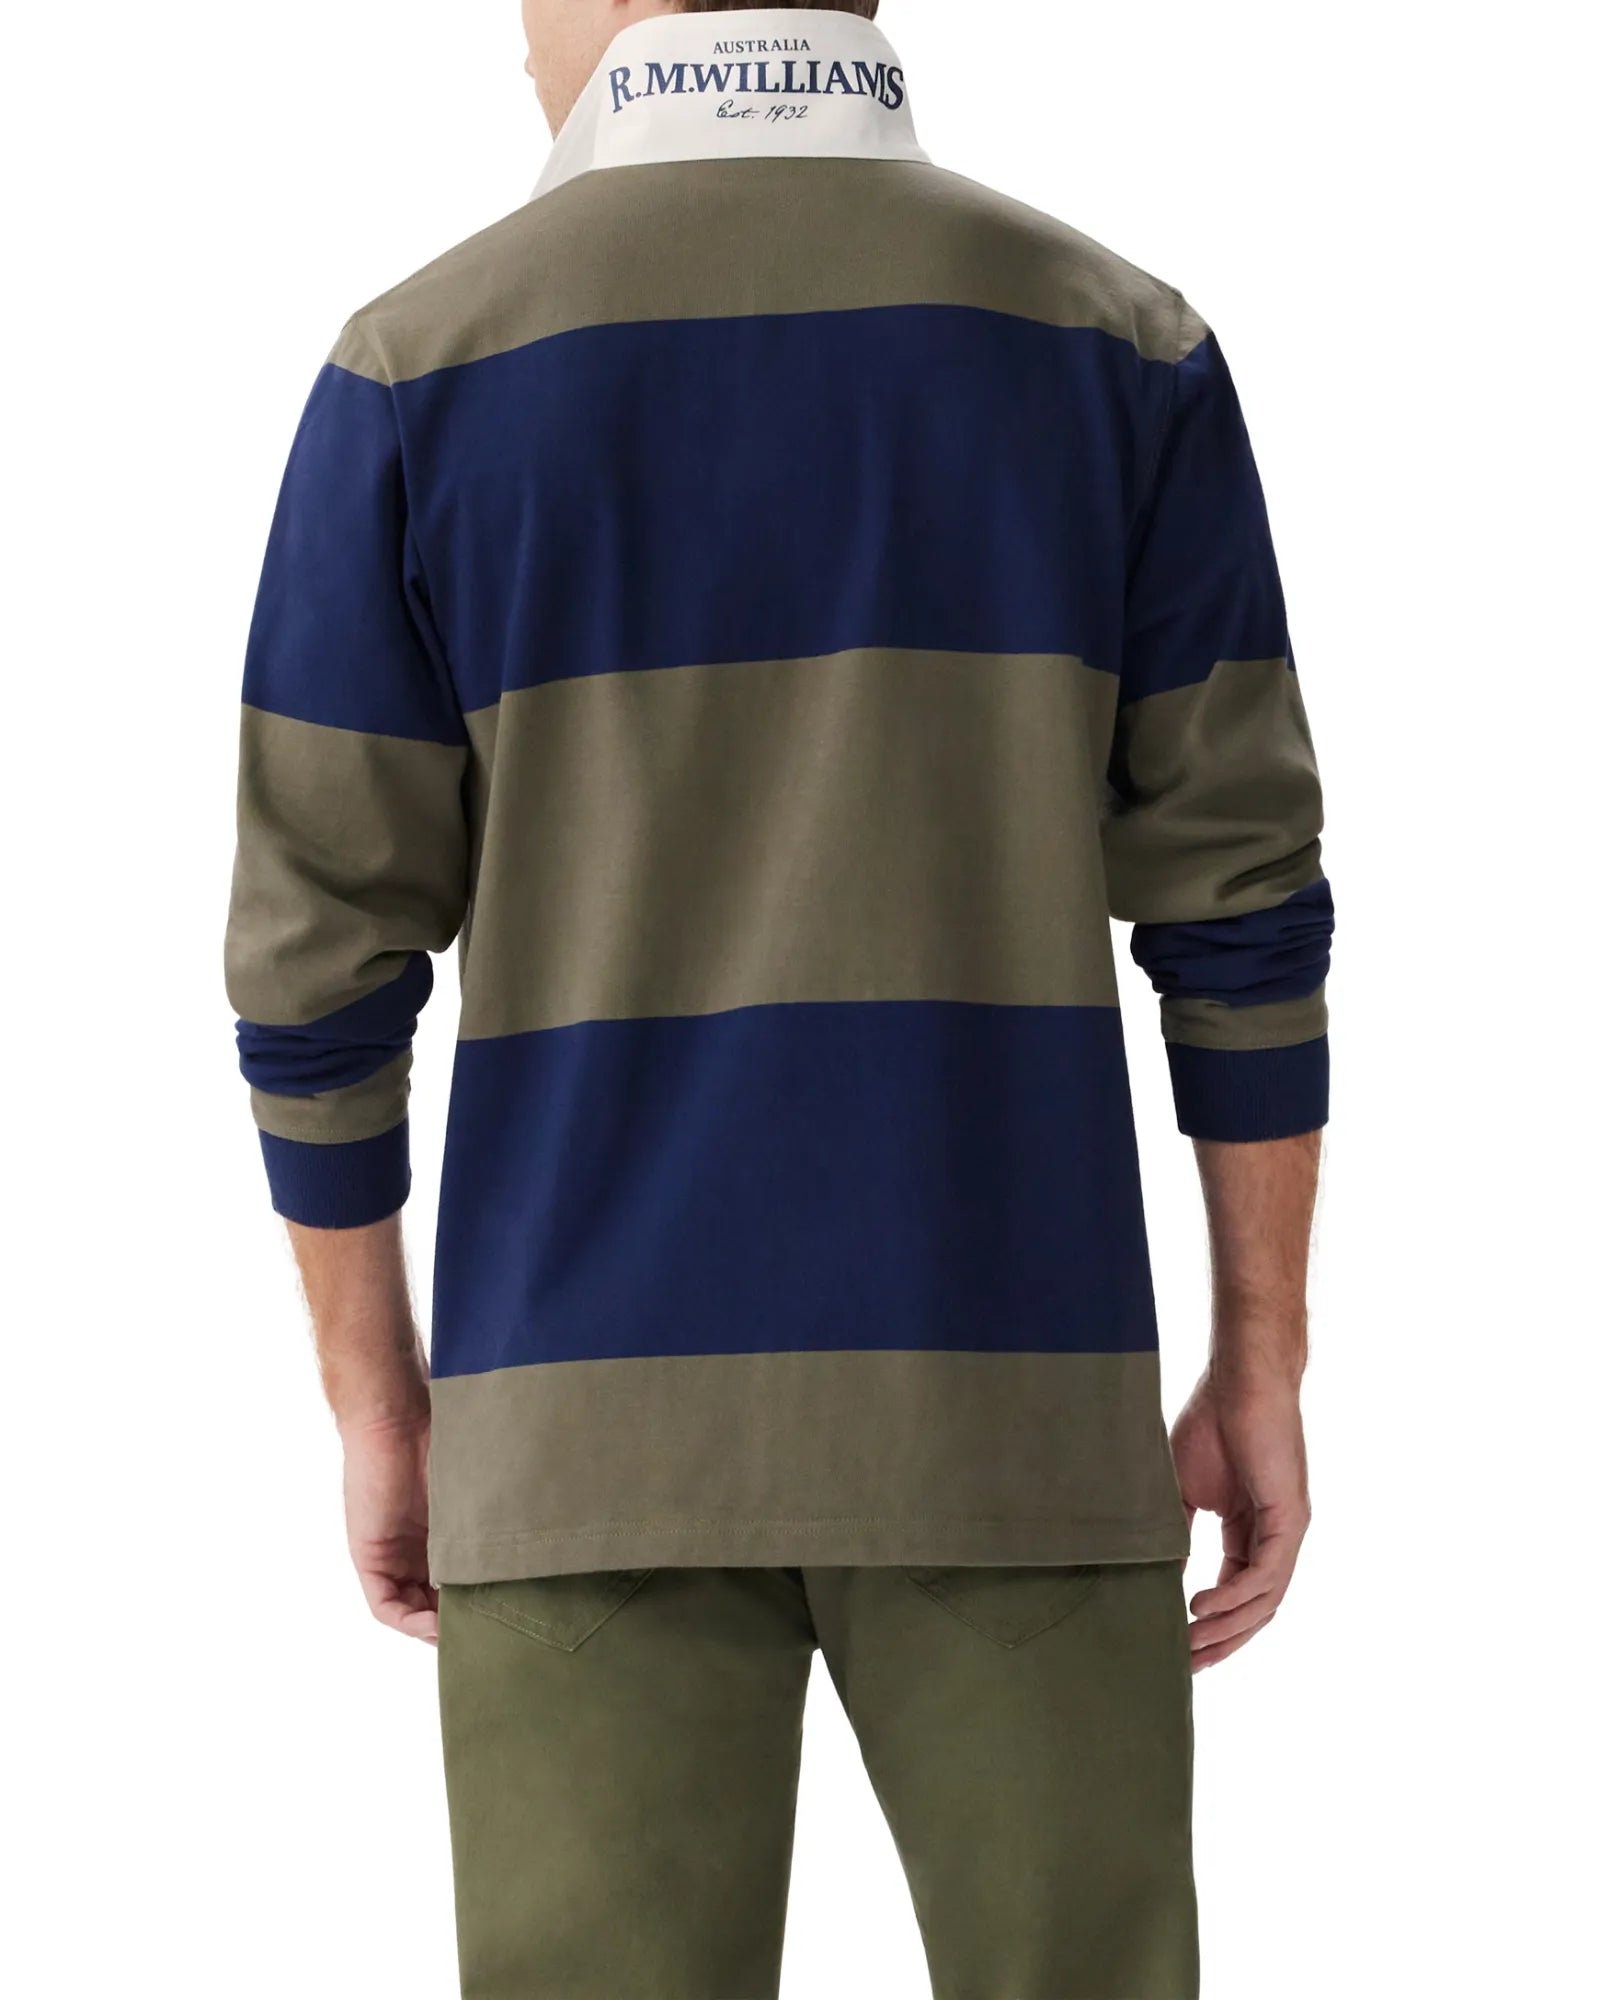 Tweedale Rugby Shirt - Green/Navy